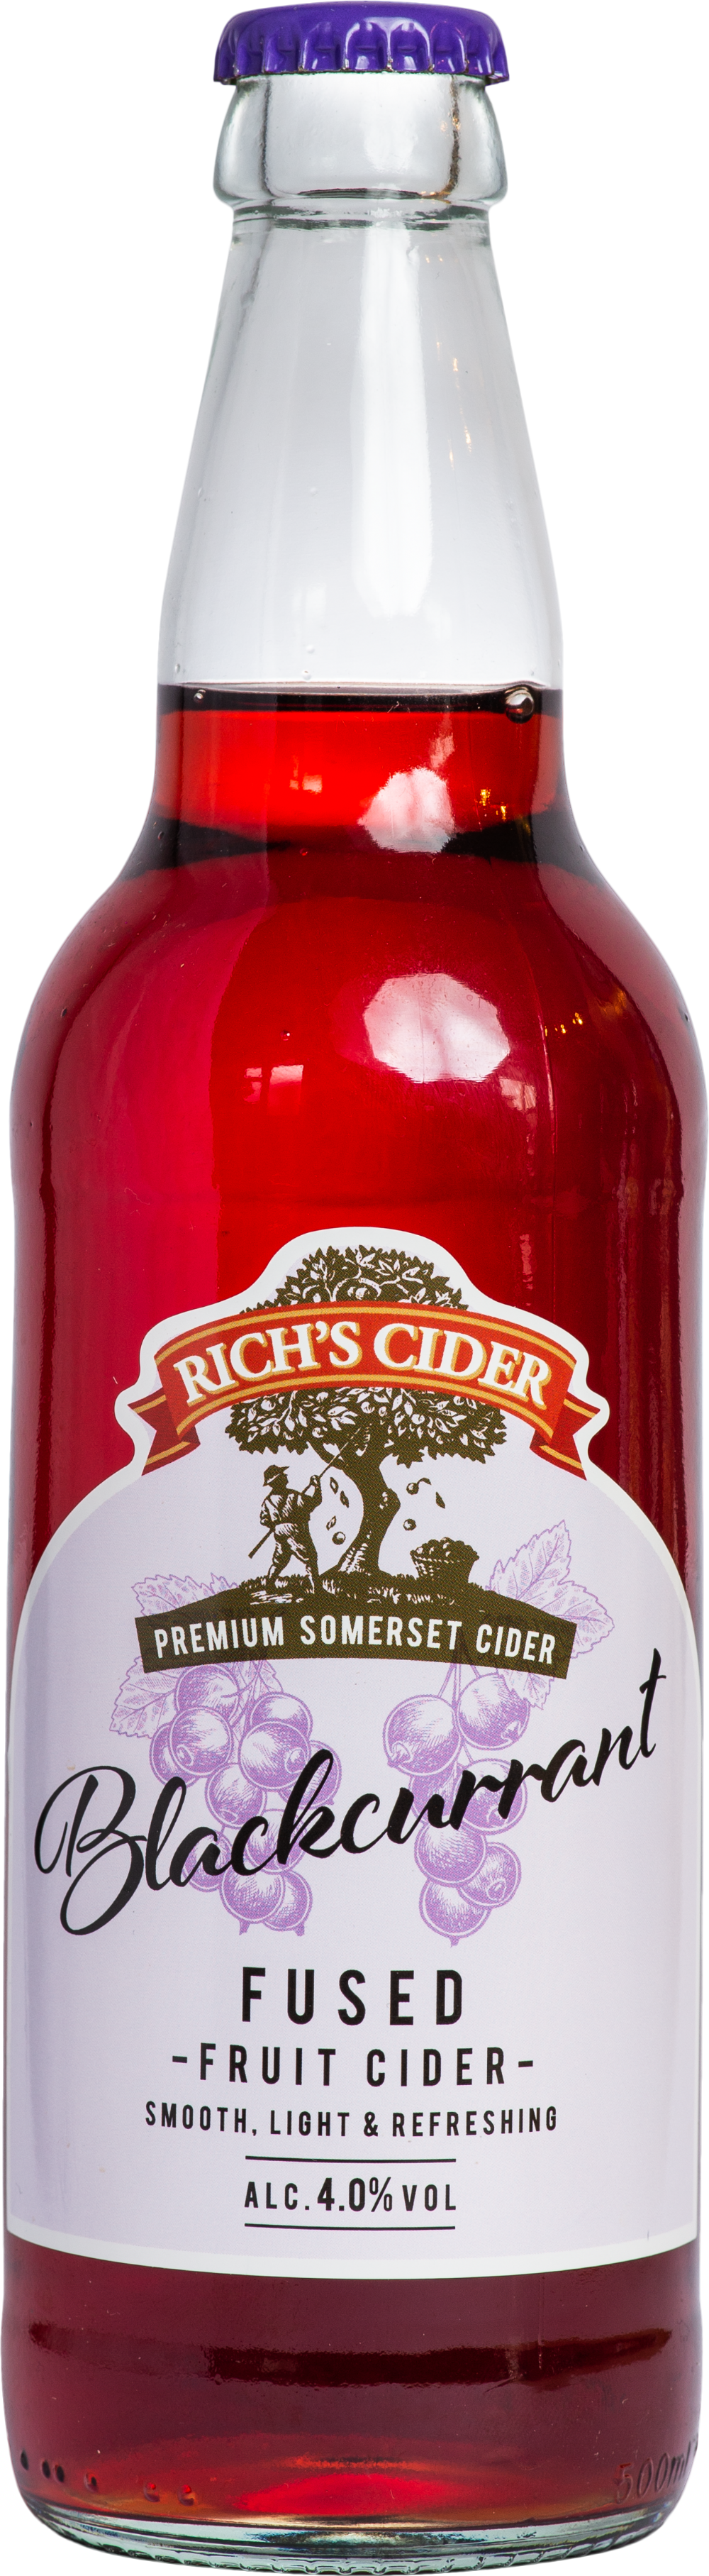 RICH'S CIDER Blackcurrant Fused Fruit Cider 4% ABV 500ml